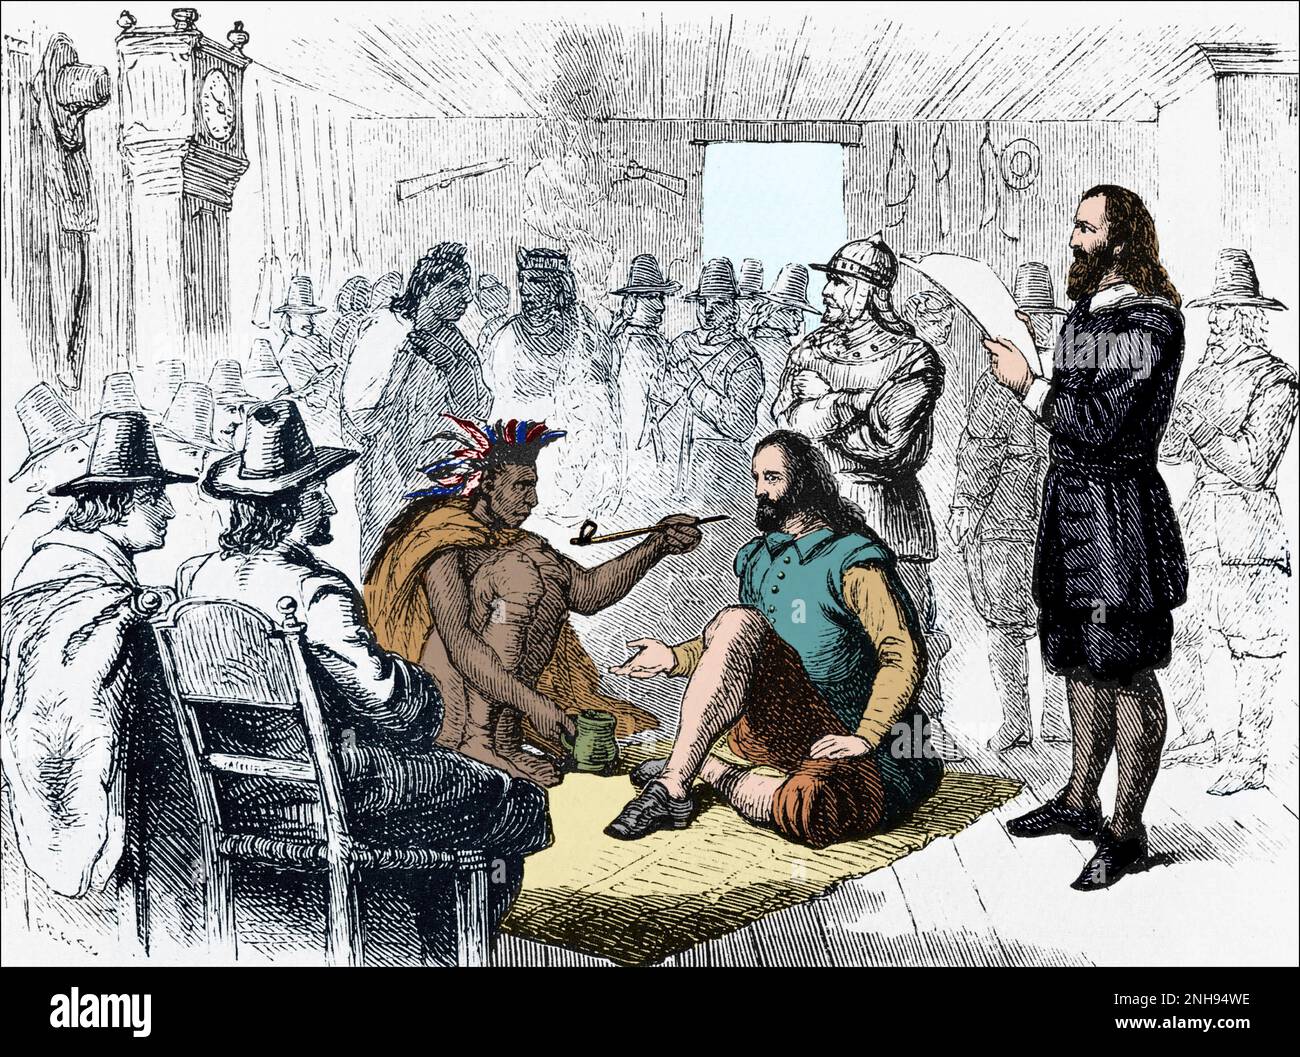 Le dirigeant de Wampanoag, Massasoit (c.1581-1661), fume un tuyau de paix avec le gouverneur de Plymouth, John Carver, après avoir signé un traité en 1621. Gravure d'avant 1898. Colorisé. Banque D'Images